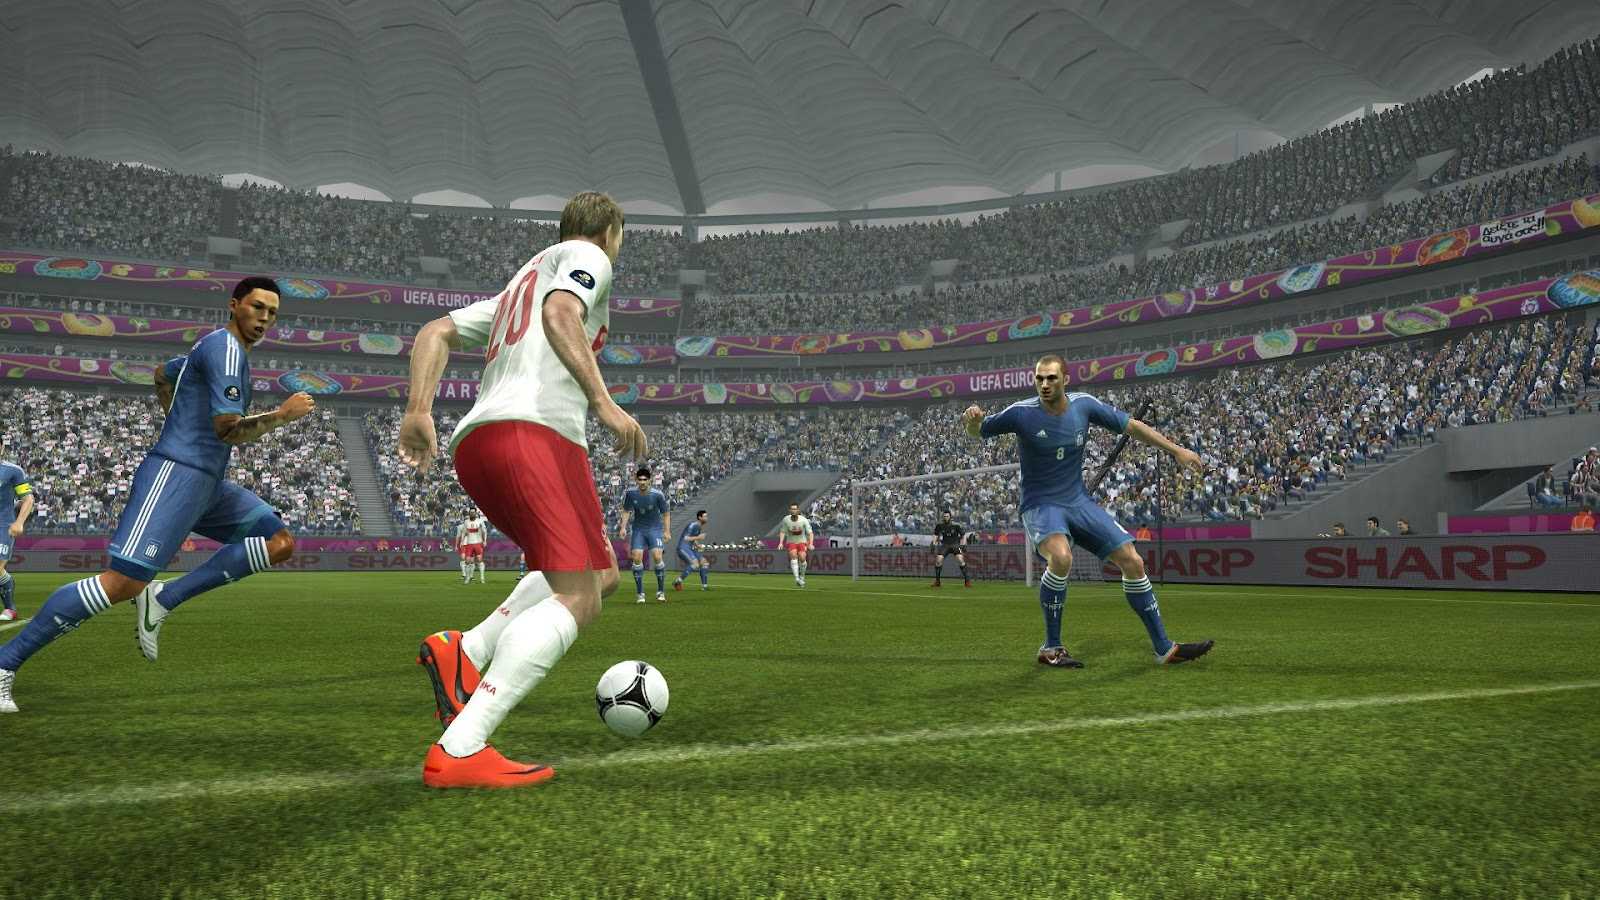 Fifa против pes: зачем одному виду спорта два симулятора?